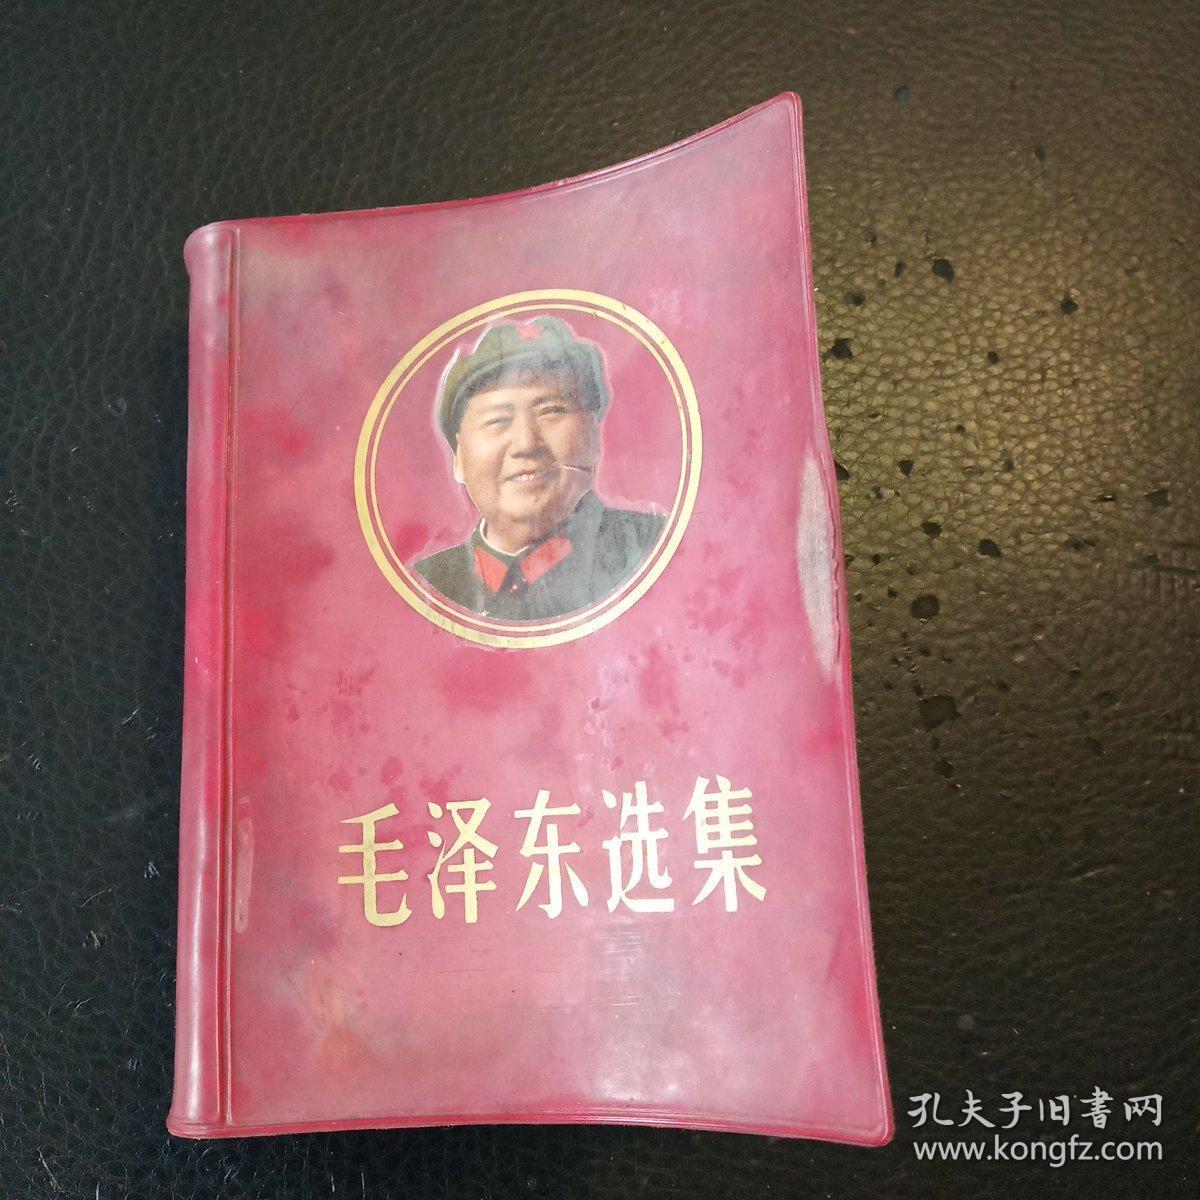 毛泽东选集（合订一卷本，内有毛主席画像 ）